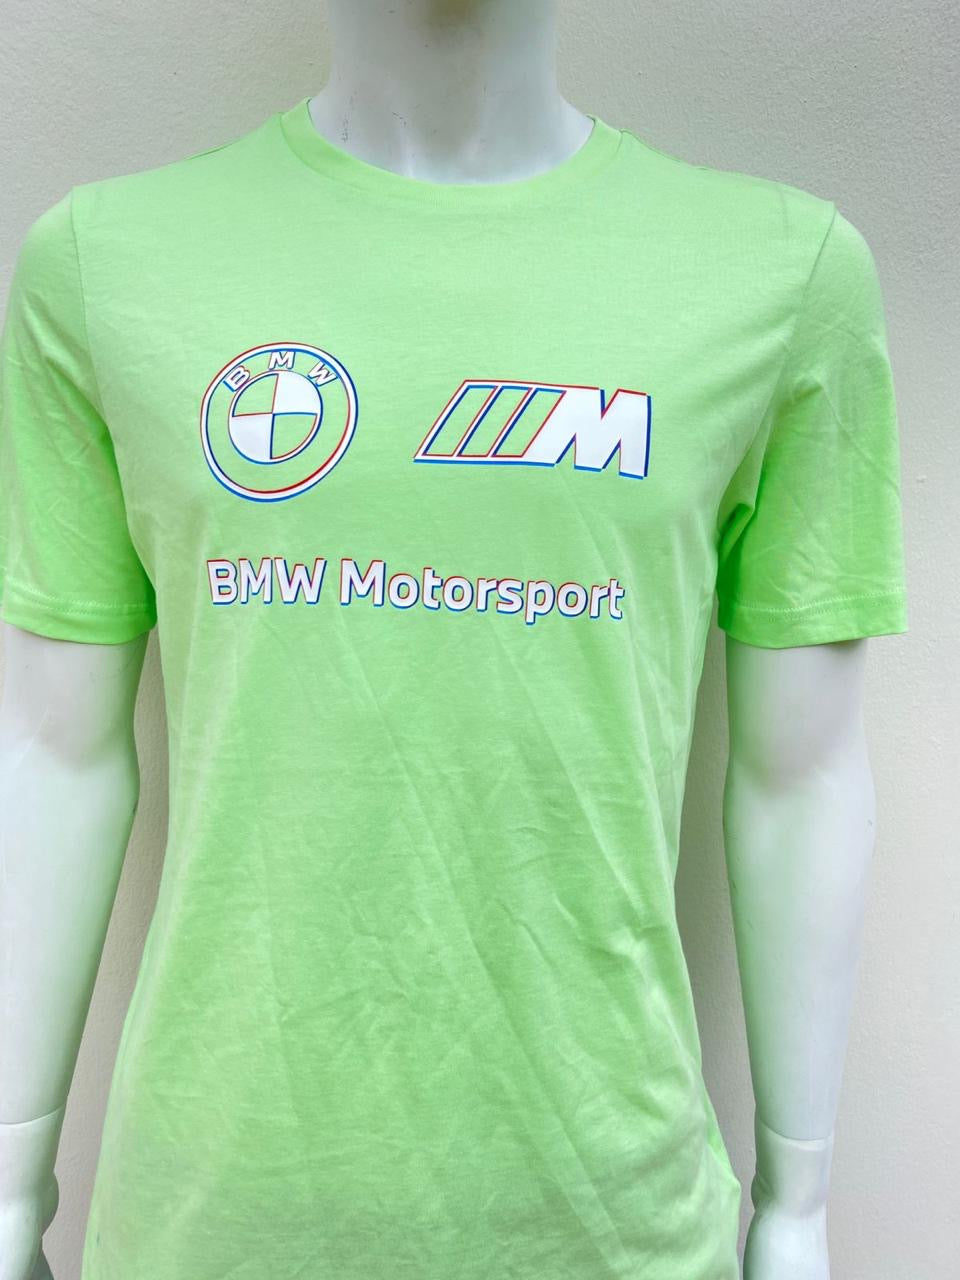 T- Shirt Puma original verde claro con logo(BMW Motorsport) letras blancas con azul y rojo.